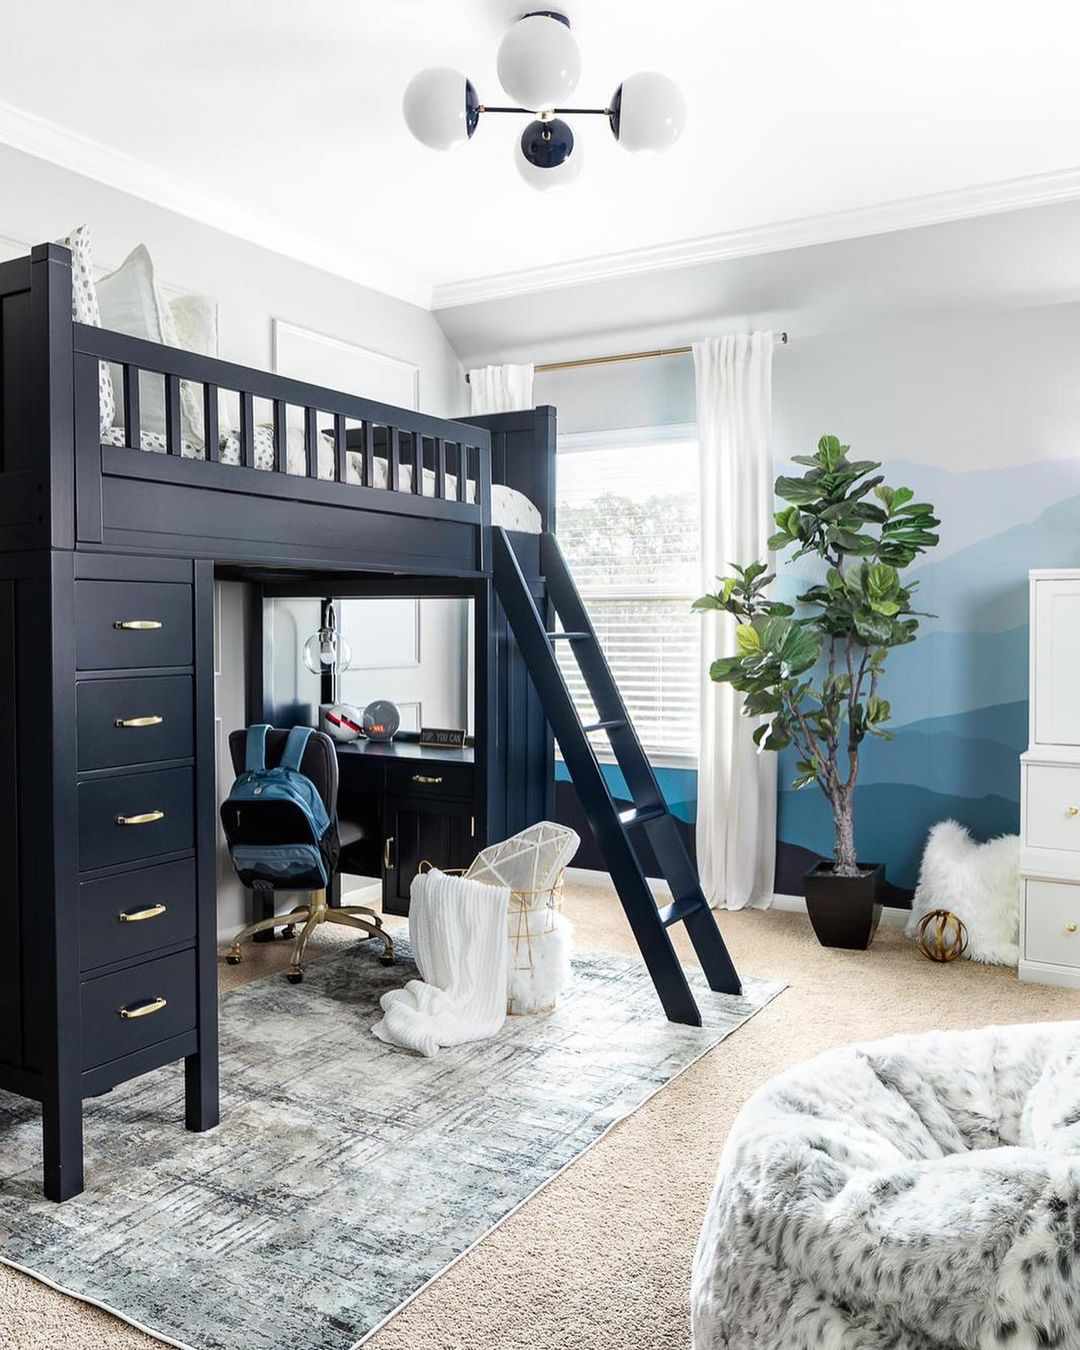 Una cama alta azul marino en la habitación de un niño con un puesto de deberes en la parte inferior y cajones en un lateral.